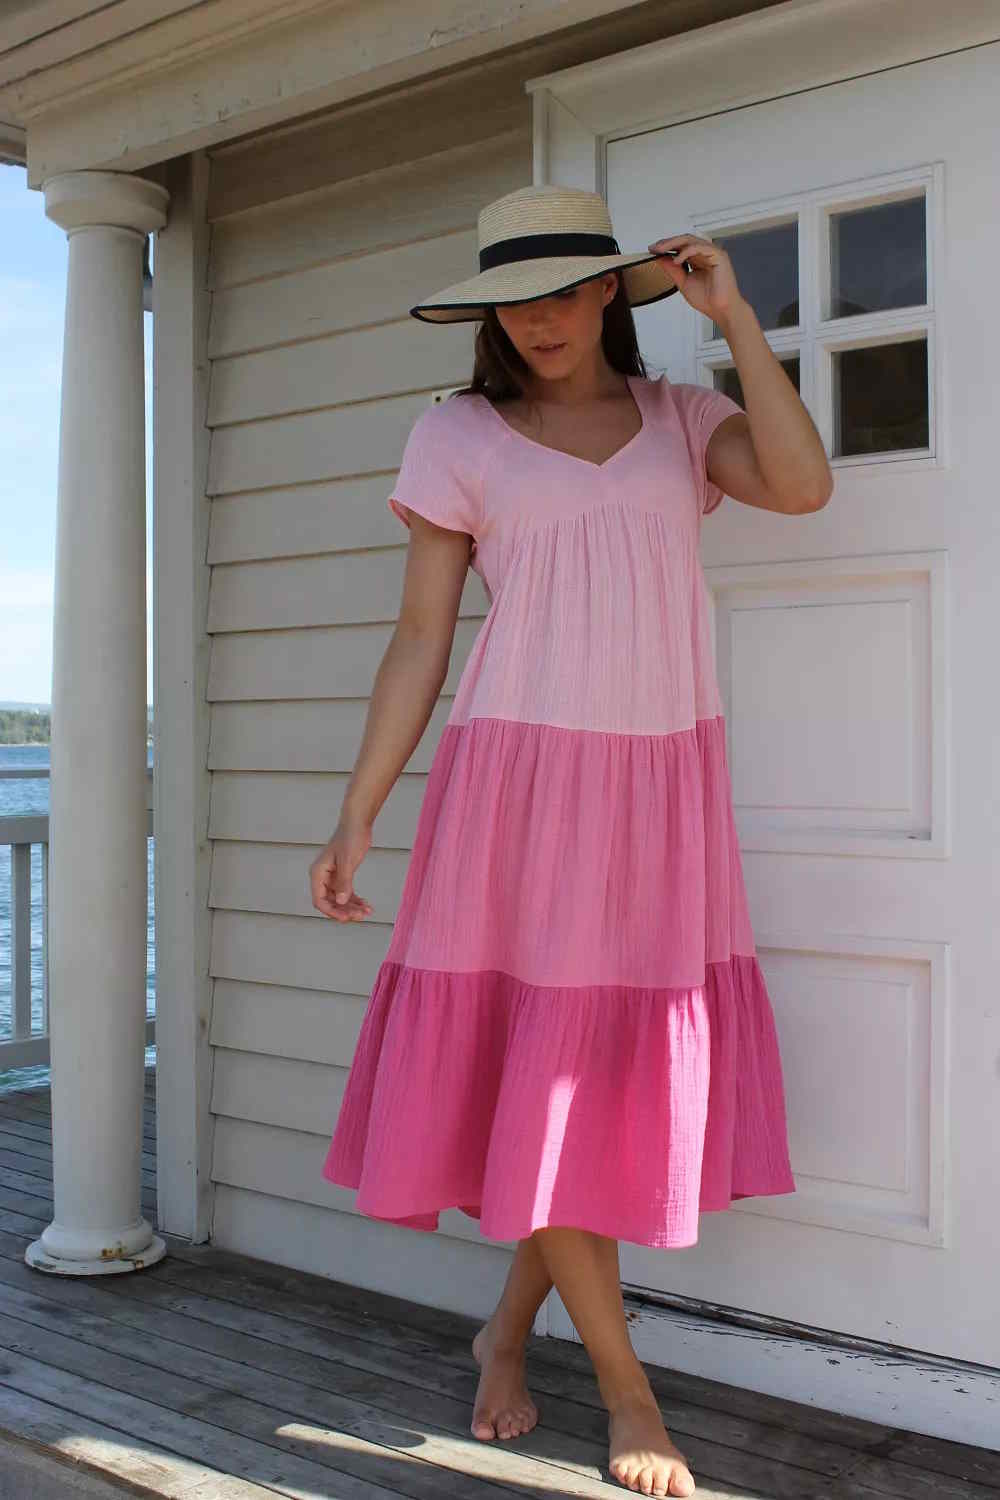 IE ANNIE medi kort kjole rosa nyanser crepe Bomull fra norsk design By Kris of Norway